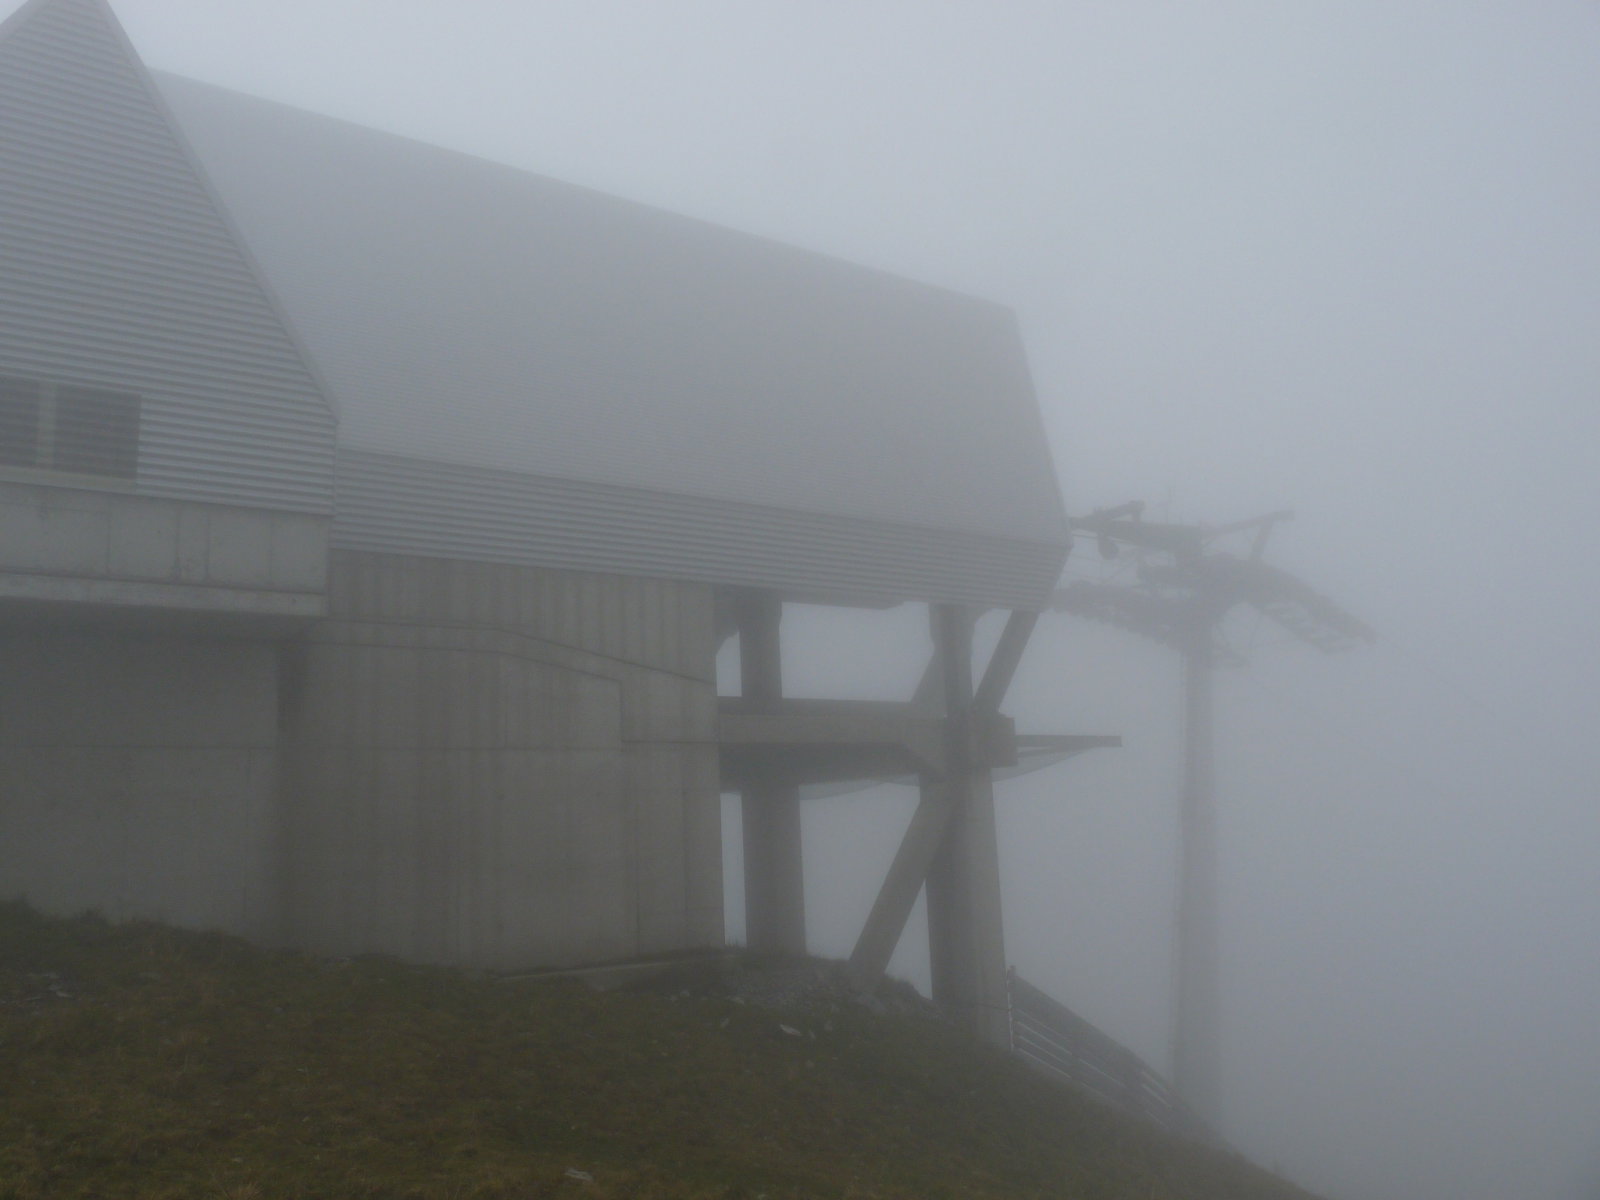 Chälenegg felvonó hegyállomása 1938m-en egész nap ködben